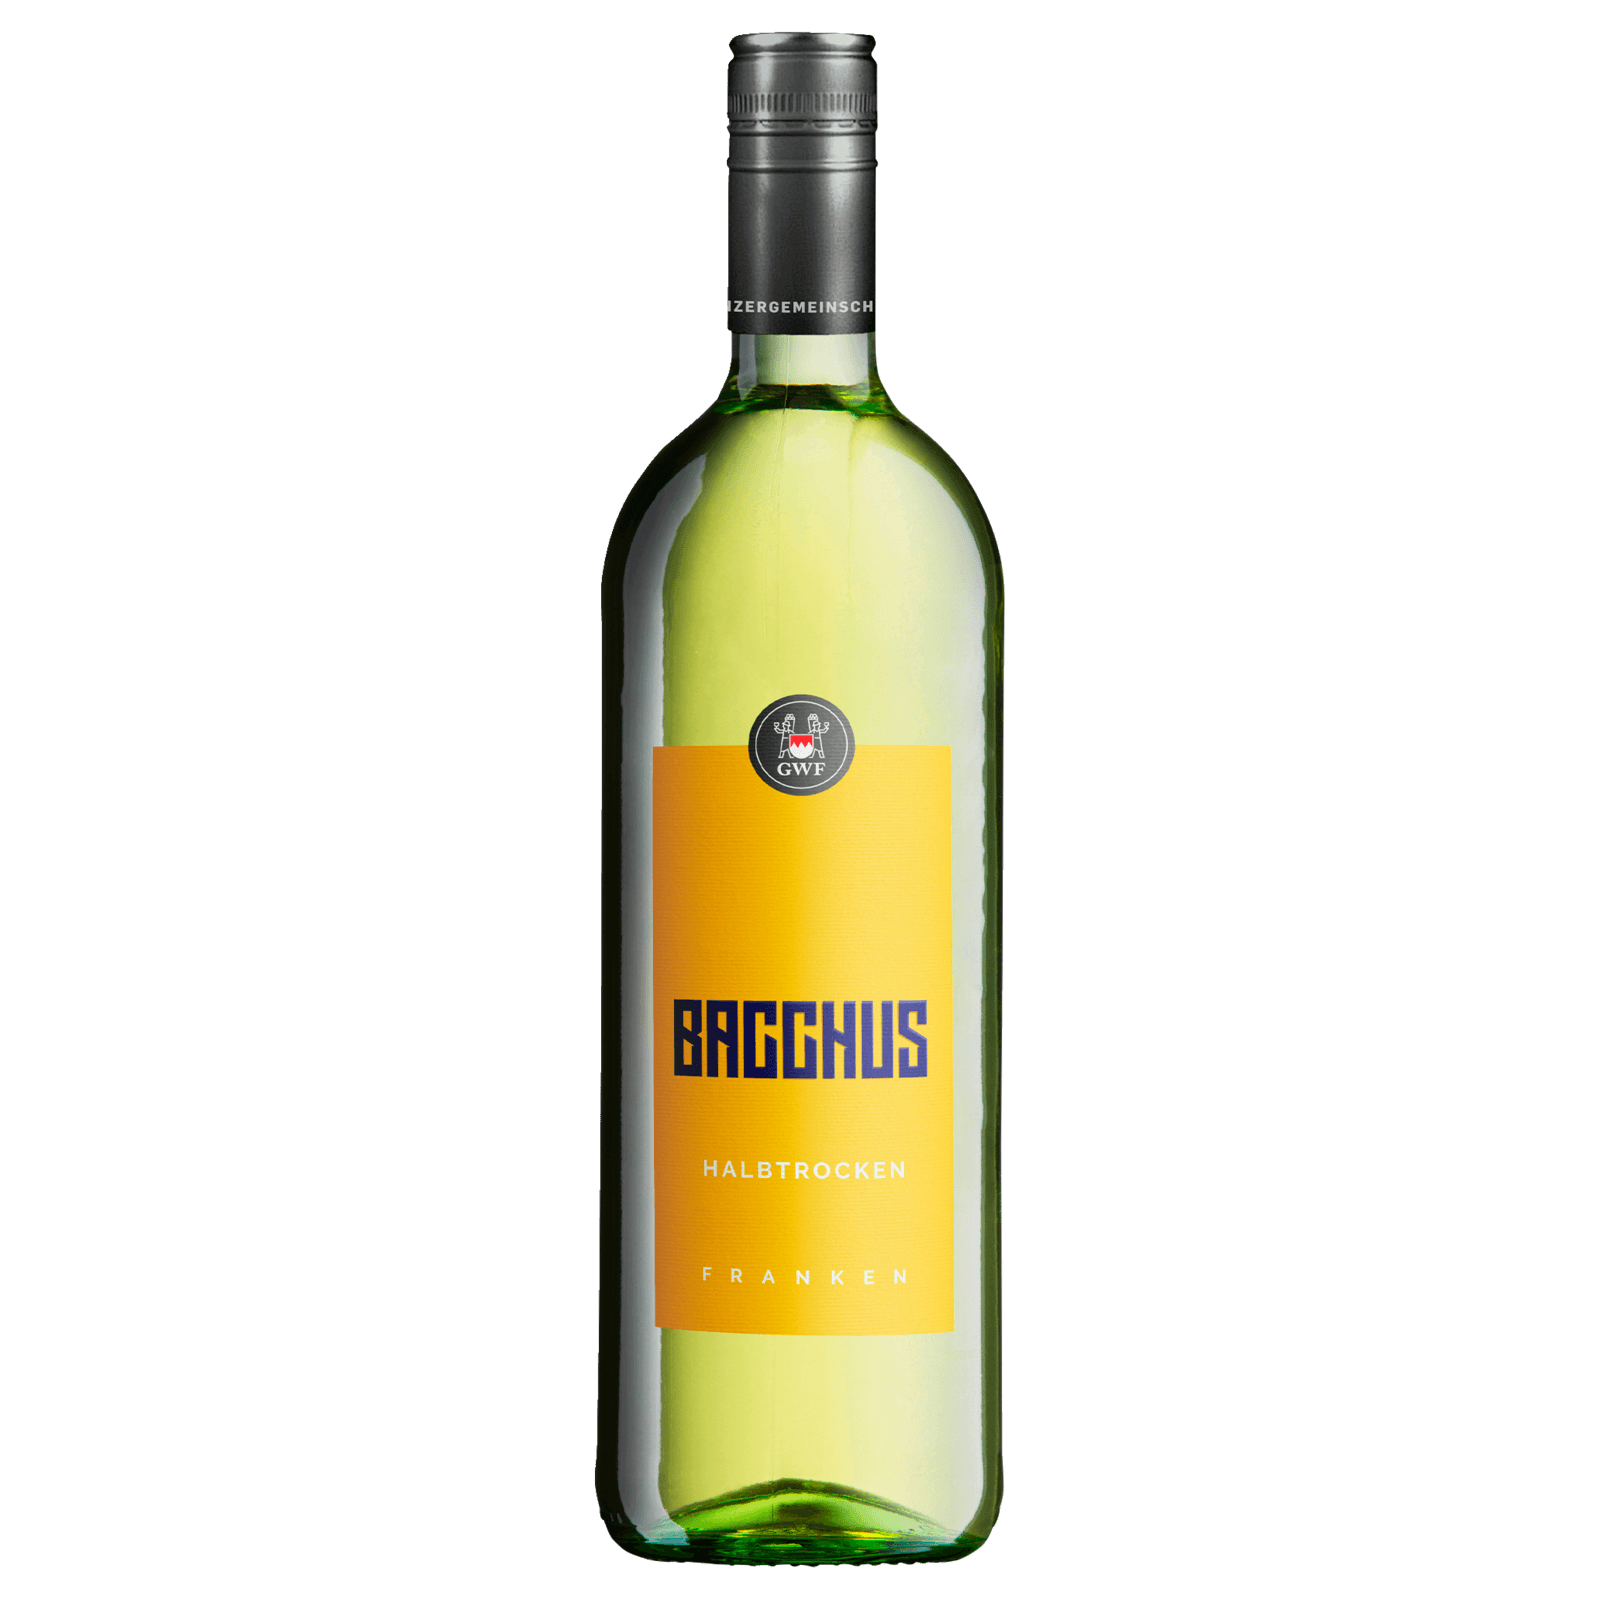 GWF Weißwein Bacchus QbA halbtrocken 1l bei REWE online bestellen! | Weißweine